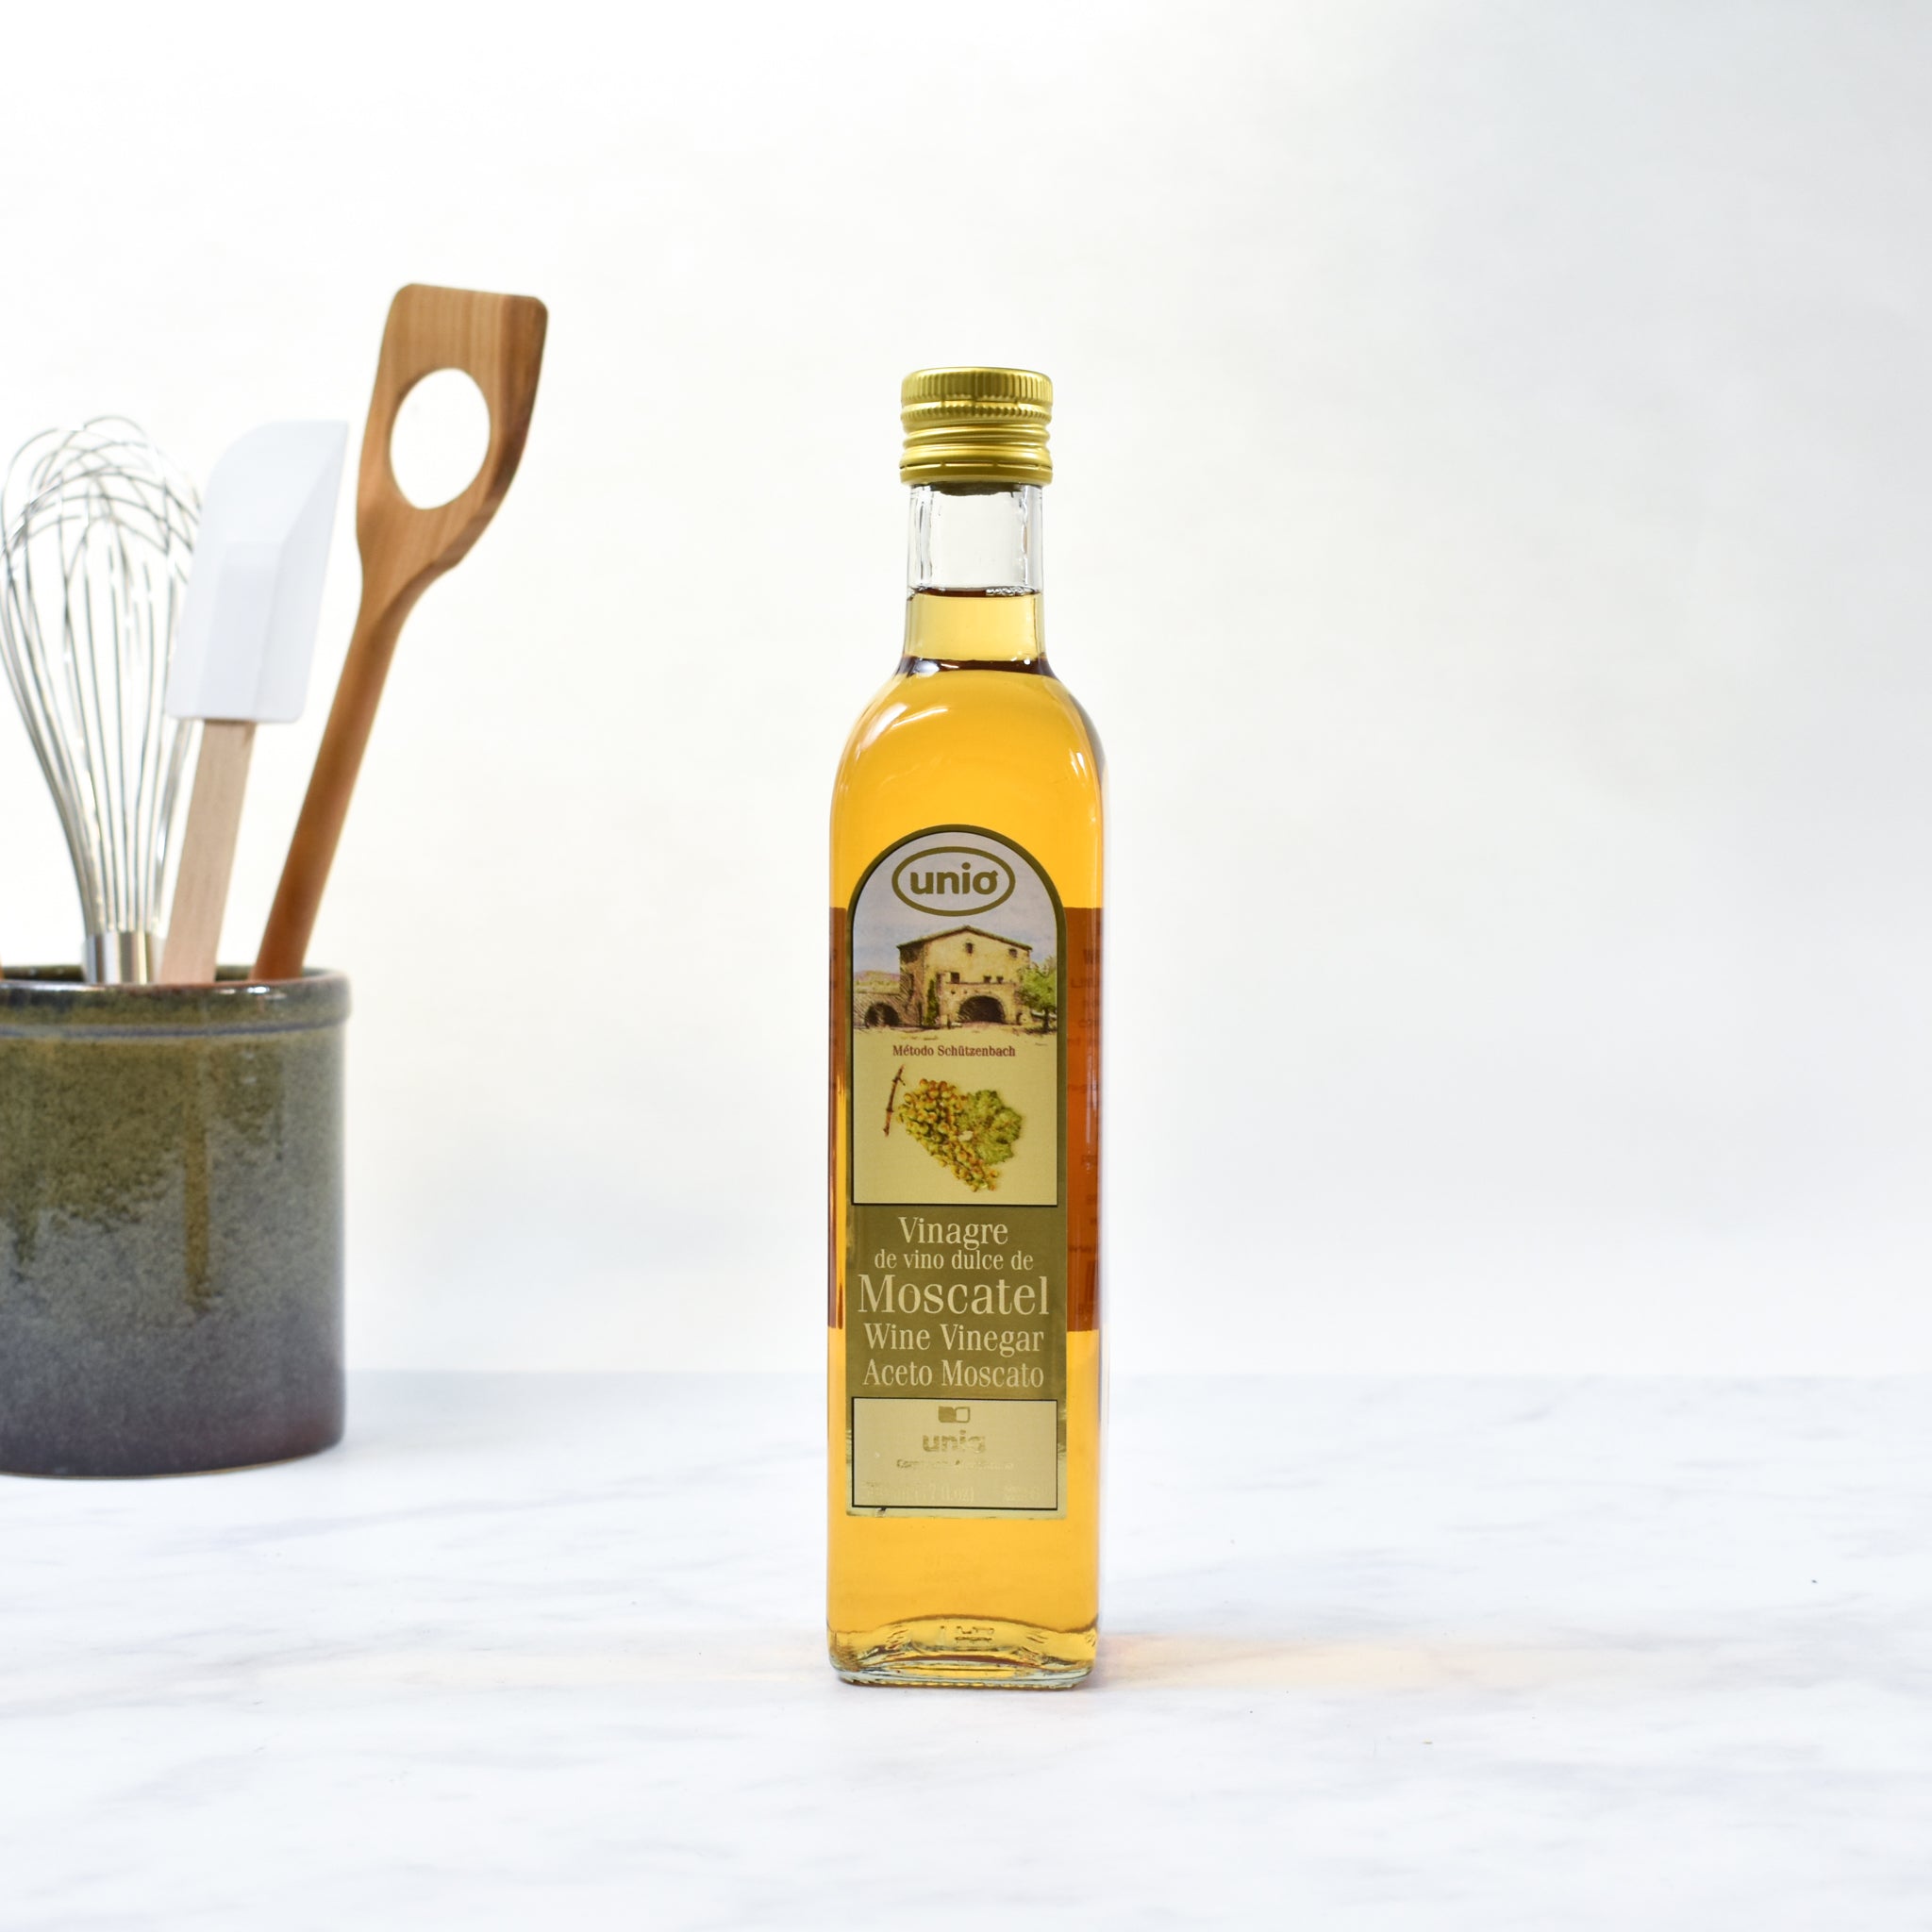 Unio Moscatel Vinegar 500ml Ingredients Oils & Vinegars Spanish Food Lifestyle Packaging Shot